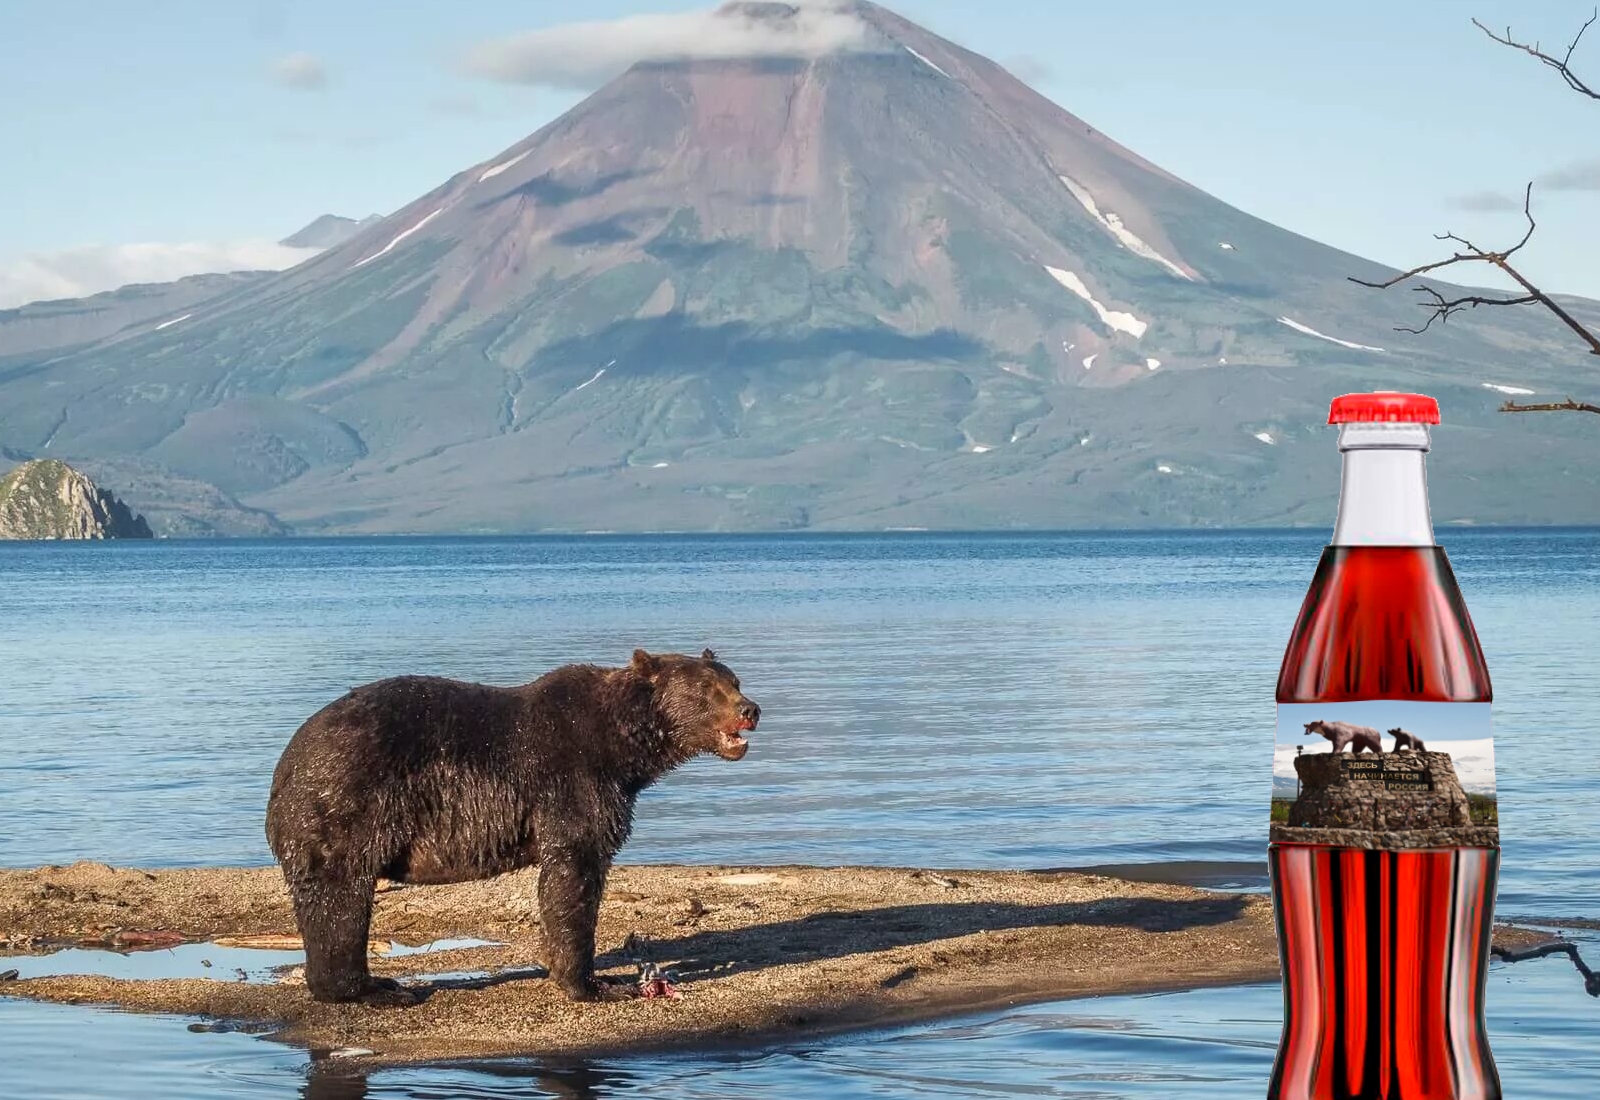 Как в России дальневосточный аналог «Кока-колы» на основе природной минералки выпускали